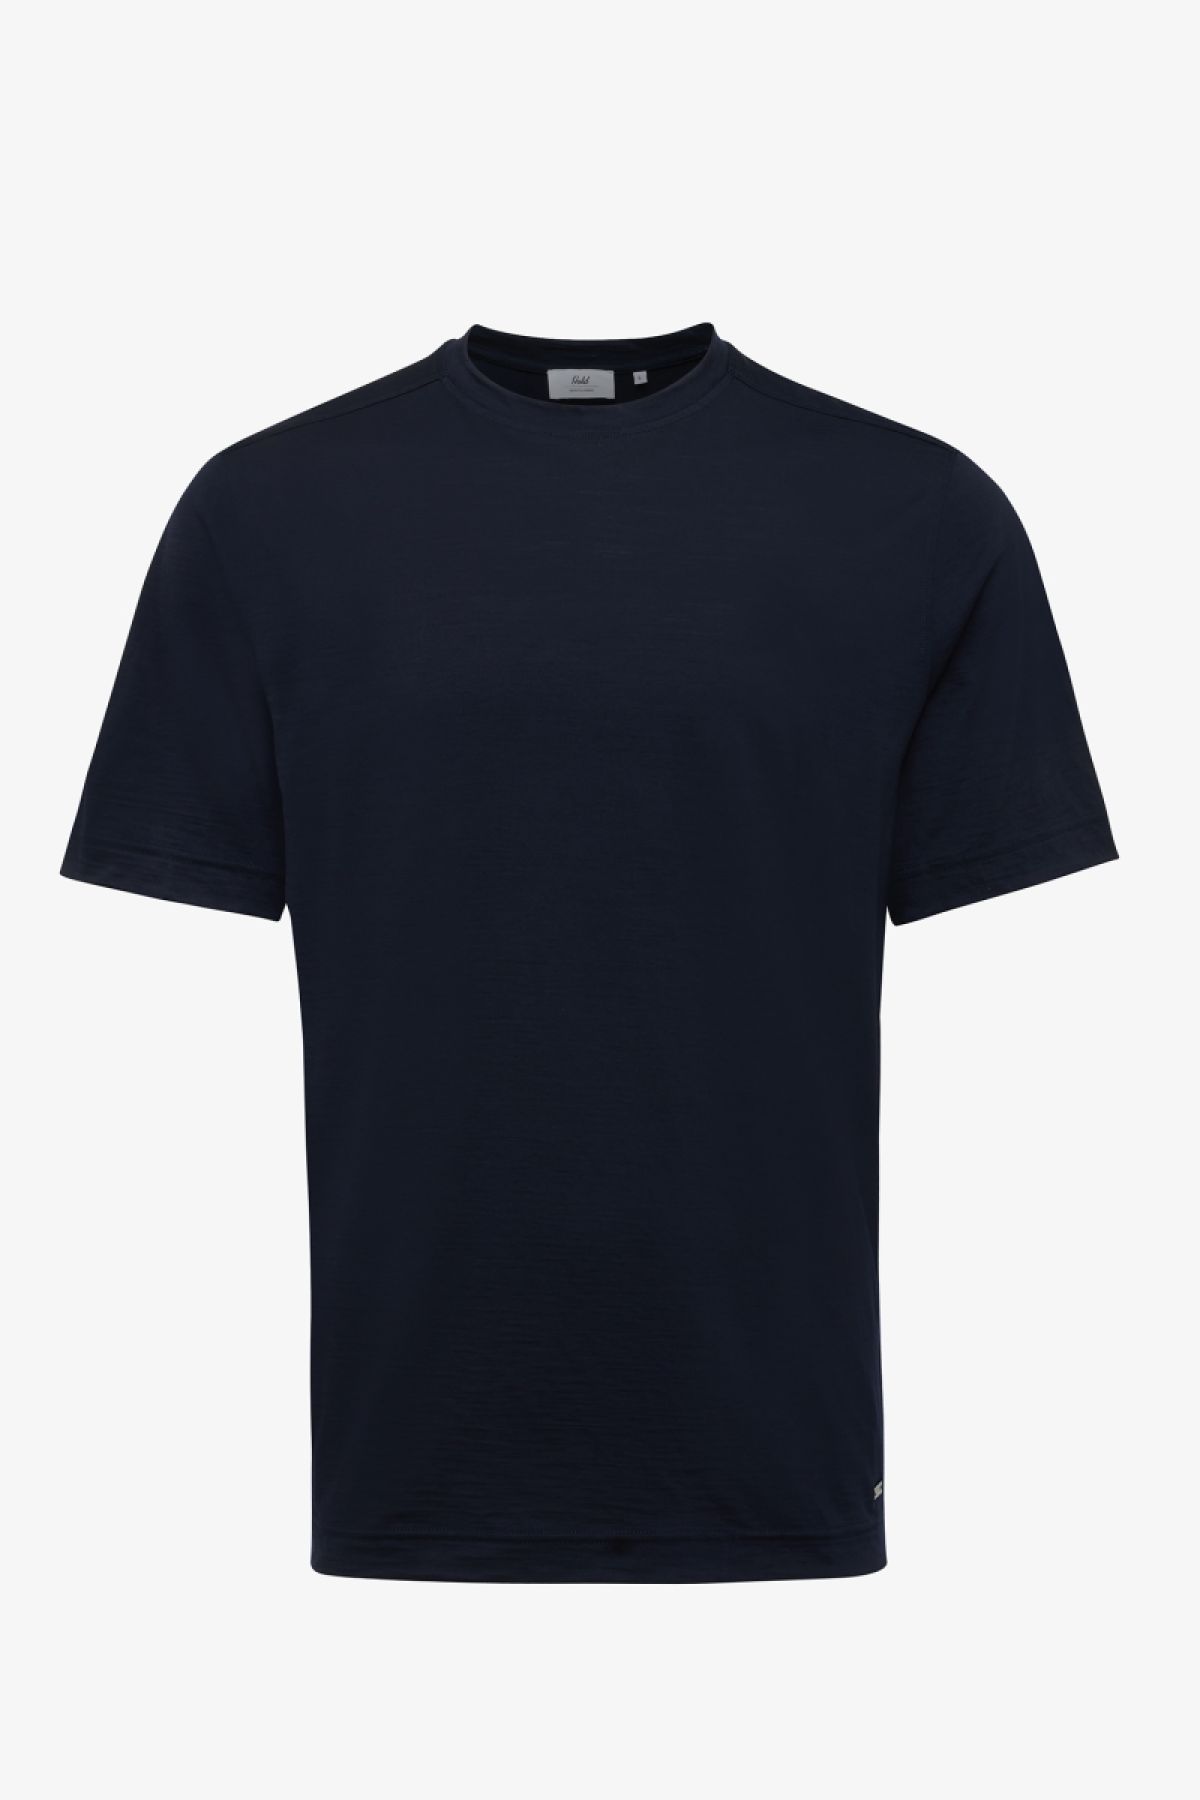 Reda active t-shirt donkerblauw